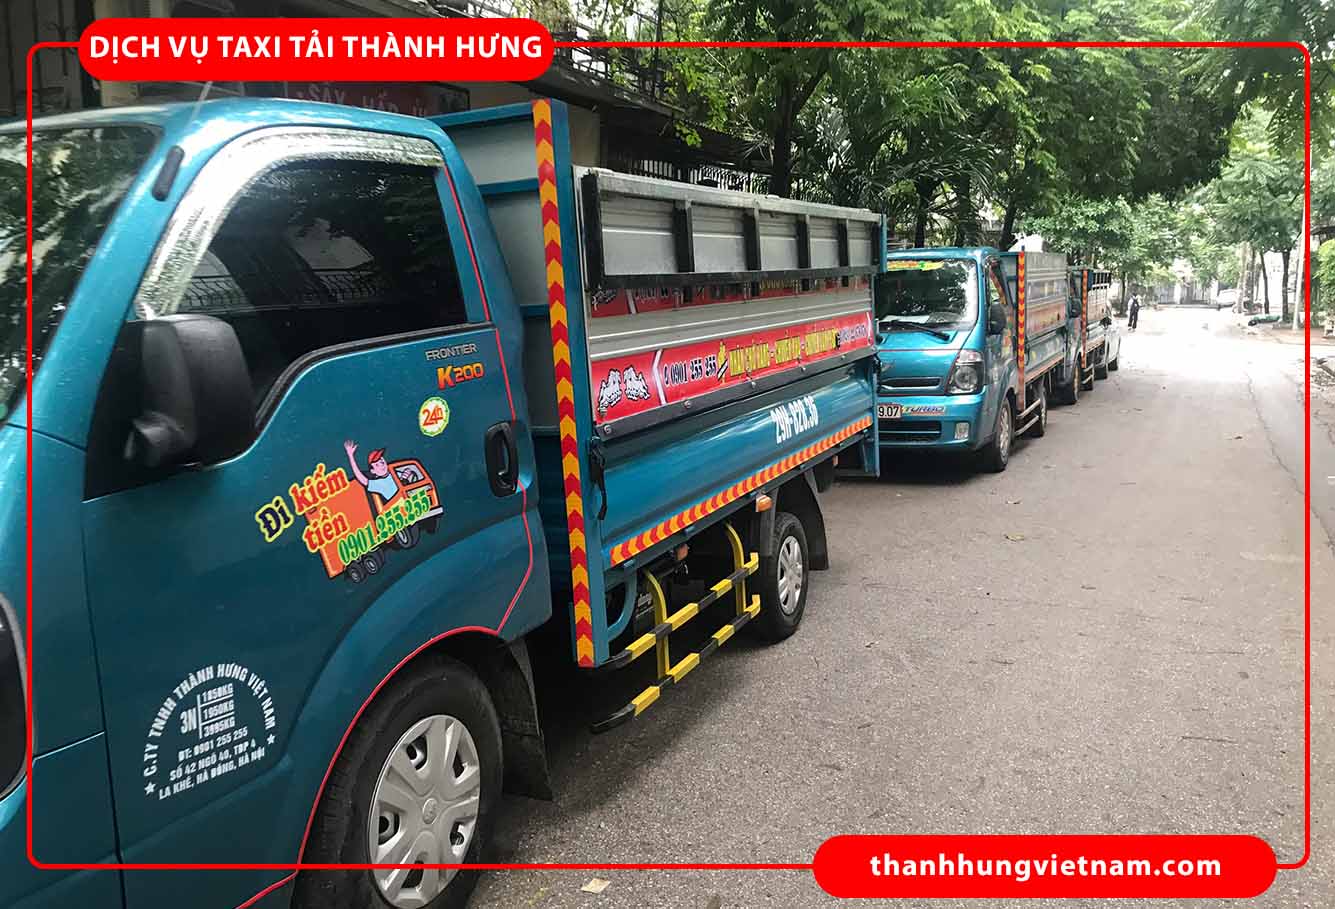 Dịch Vụ Taxi Tải Thành Hưng - Cho Thuê Xe Tải Giá Rẻ Tại Hà Nội